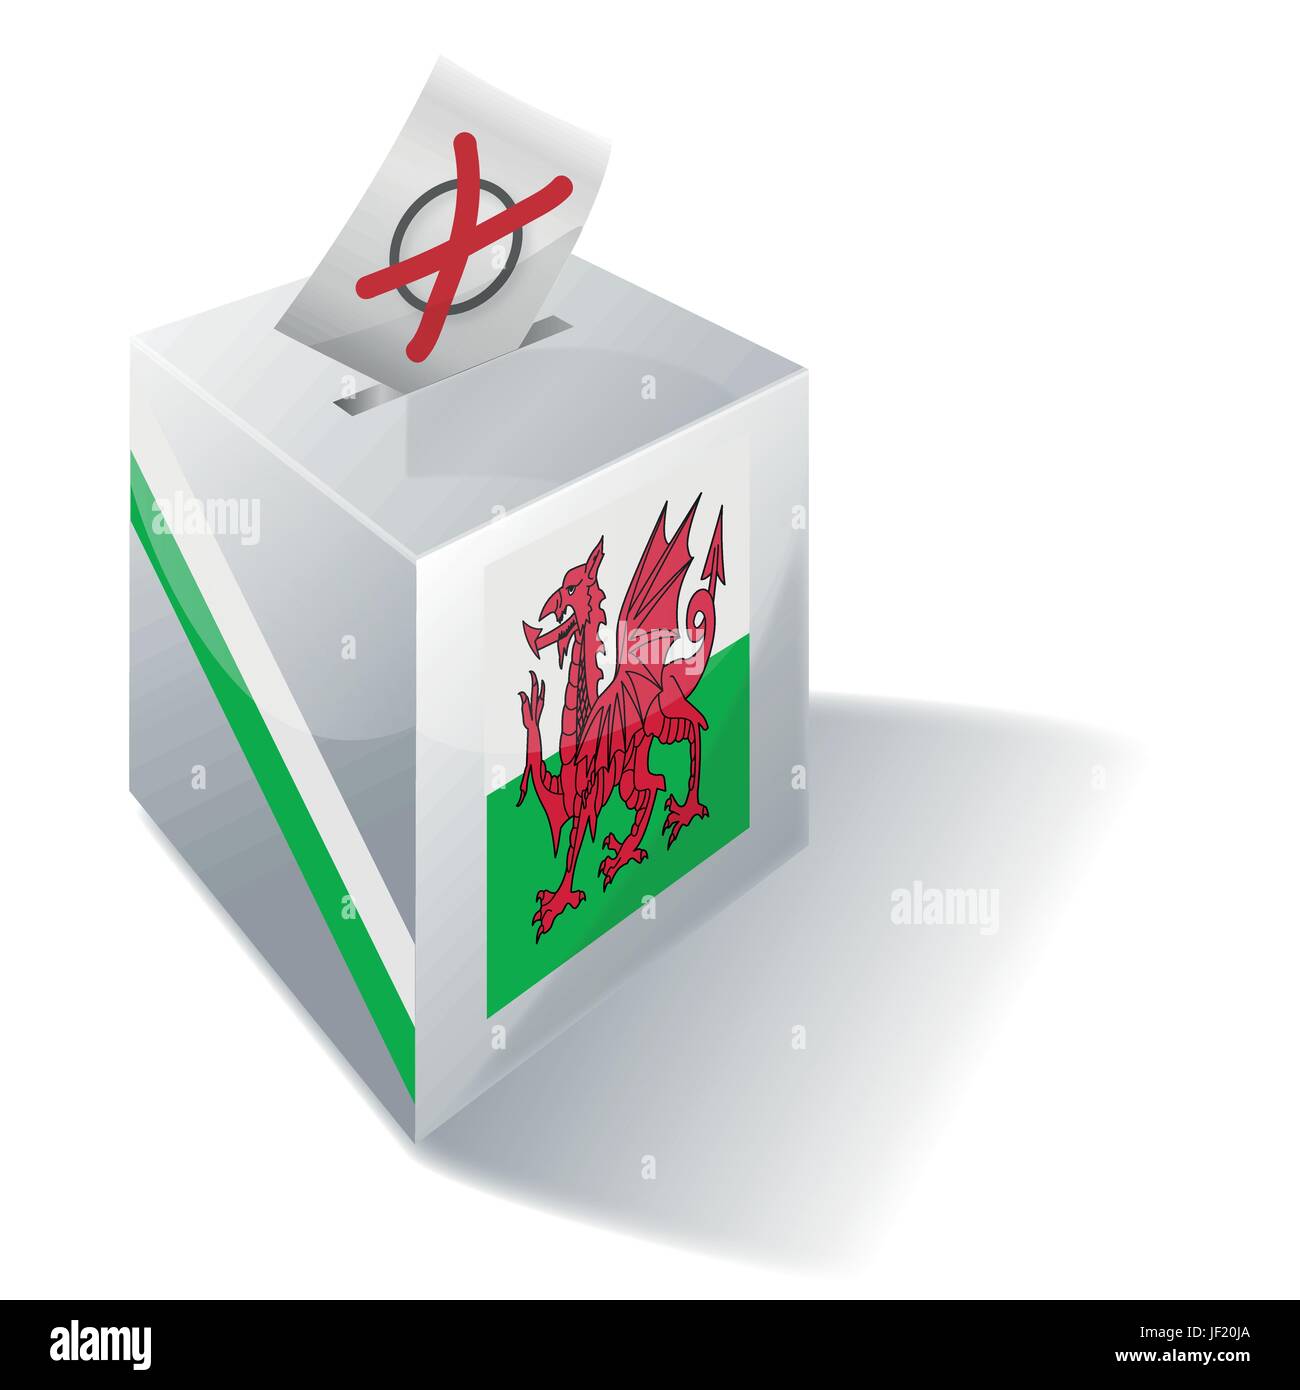 Pays de Galles, la Celtic, gallois, Bretagne, social, croix, urnes, drapeau, vote, vote, voix, Illustration de Vecteur